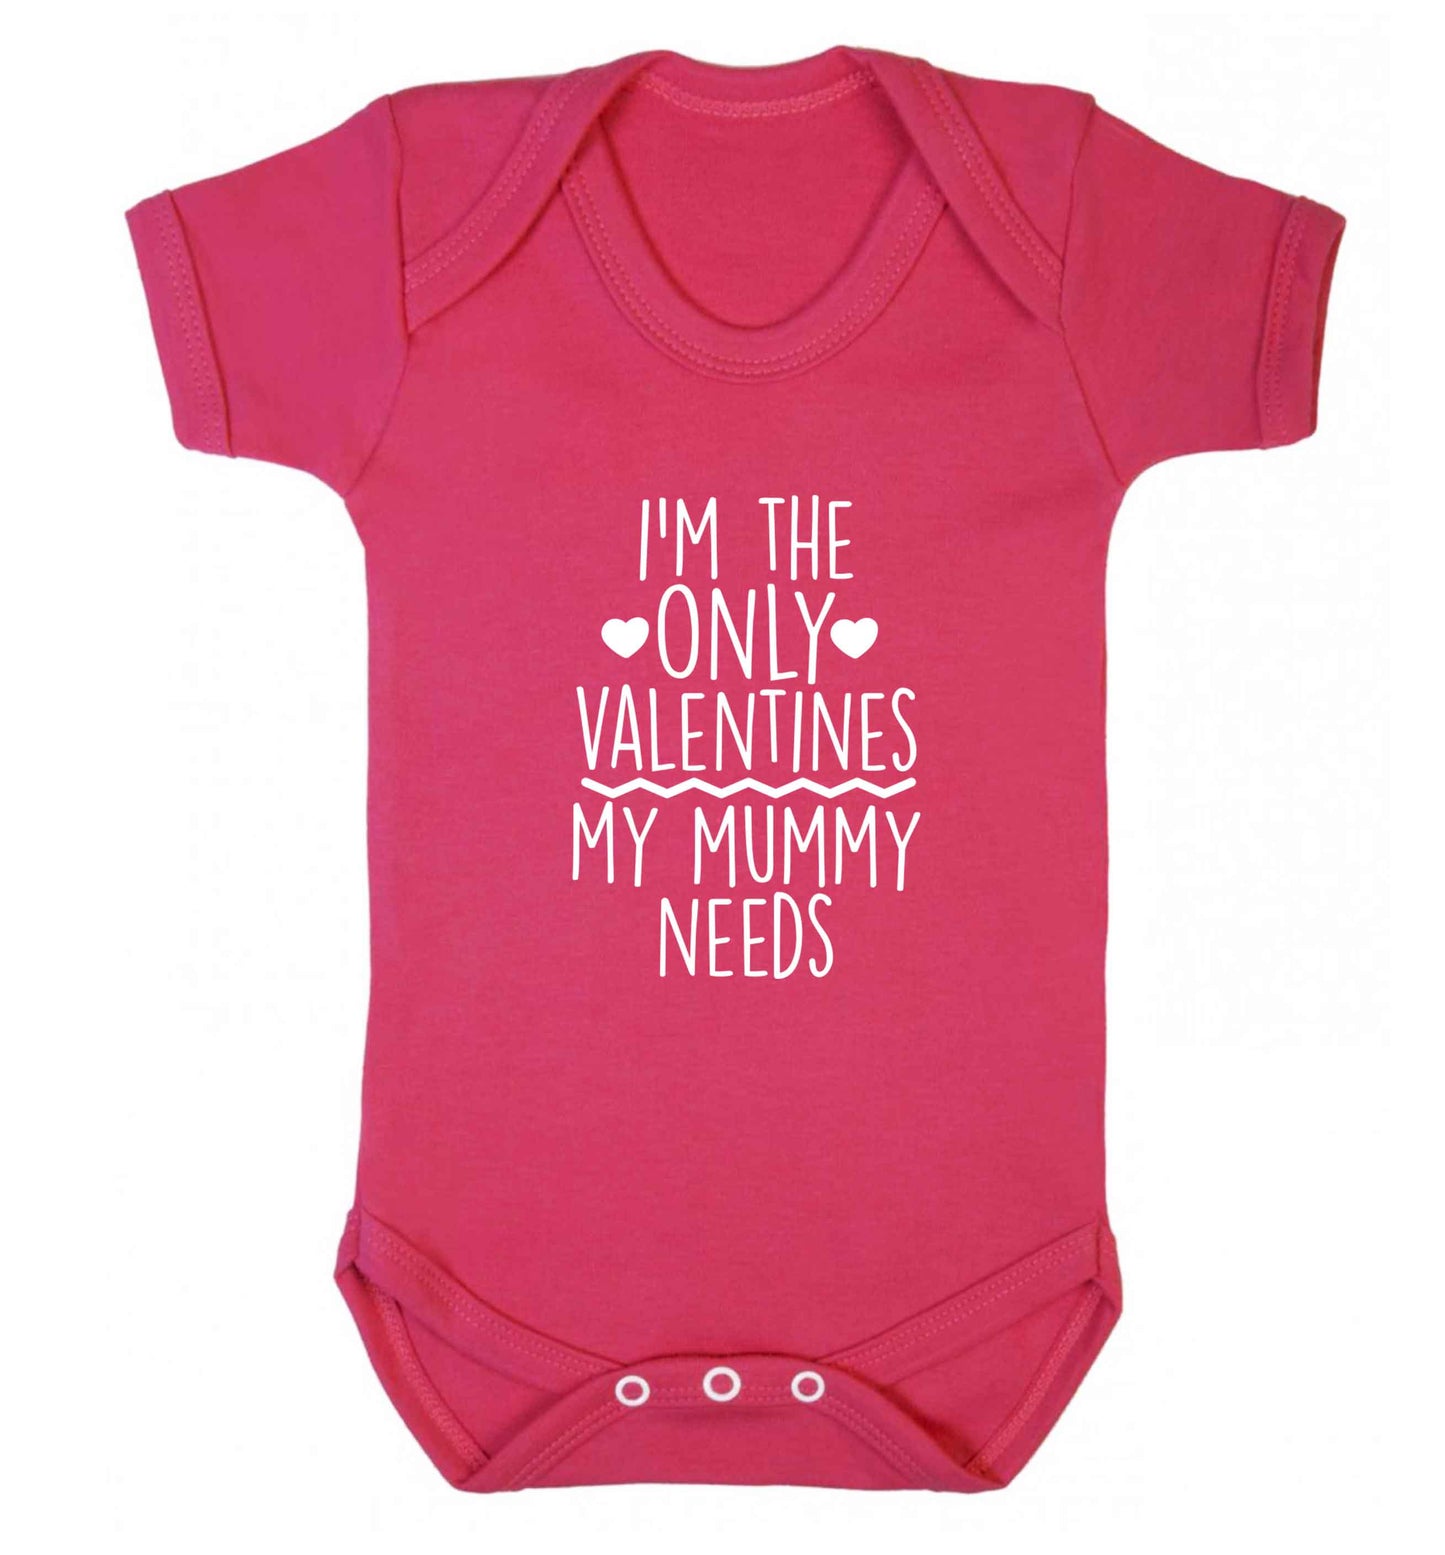 I'm the only valentines my mummy needs baby vest dark pink 18-24 months